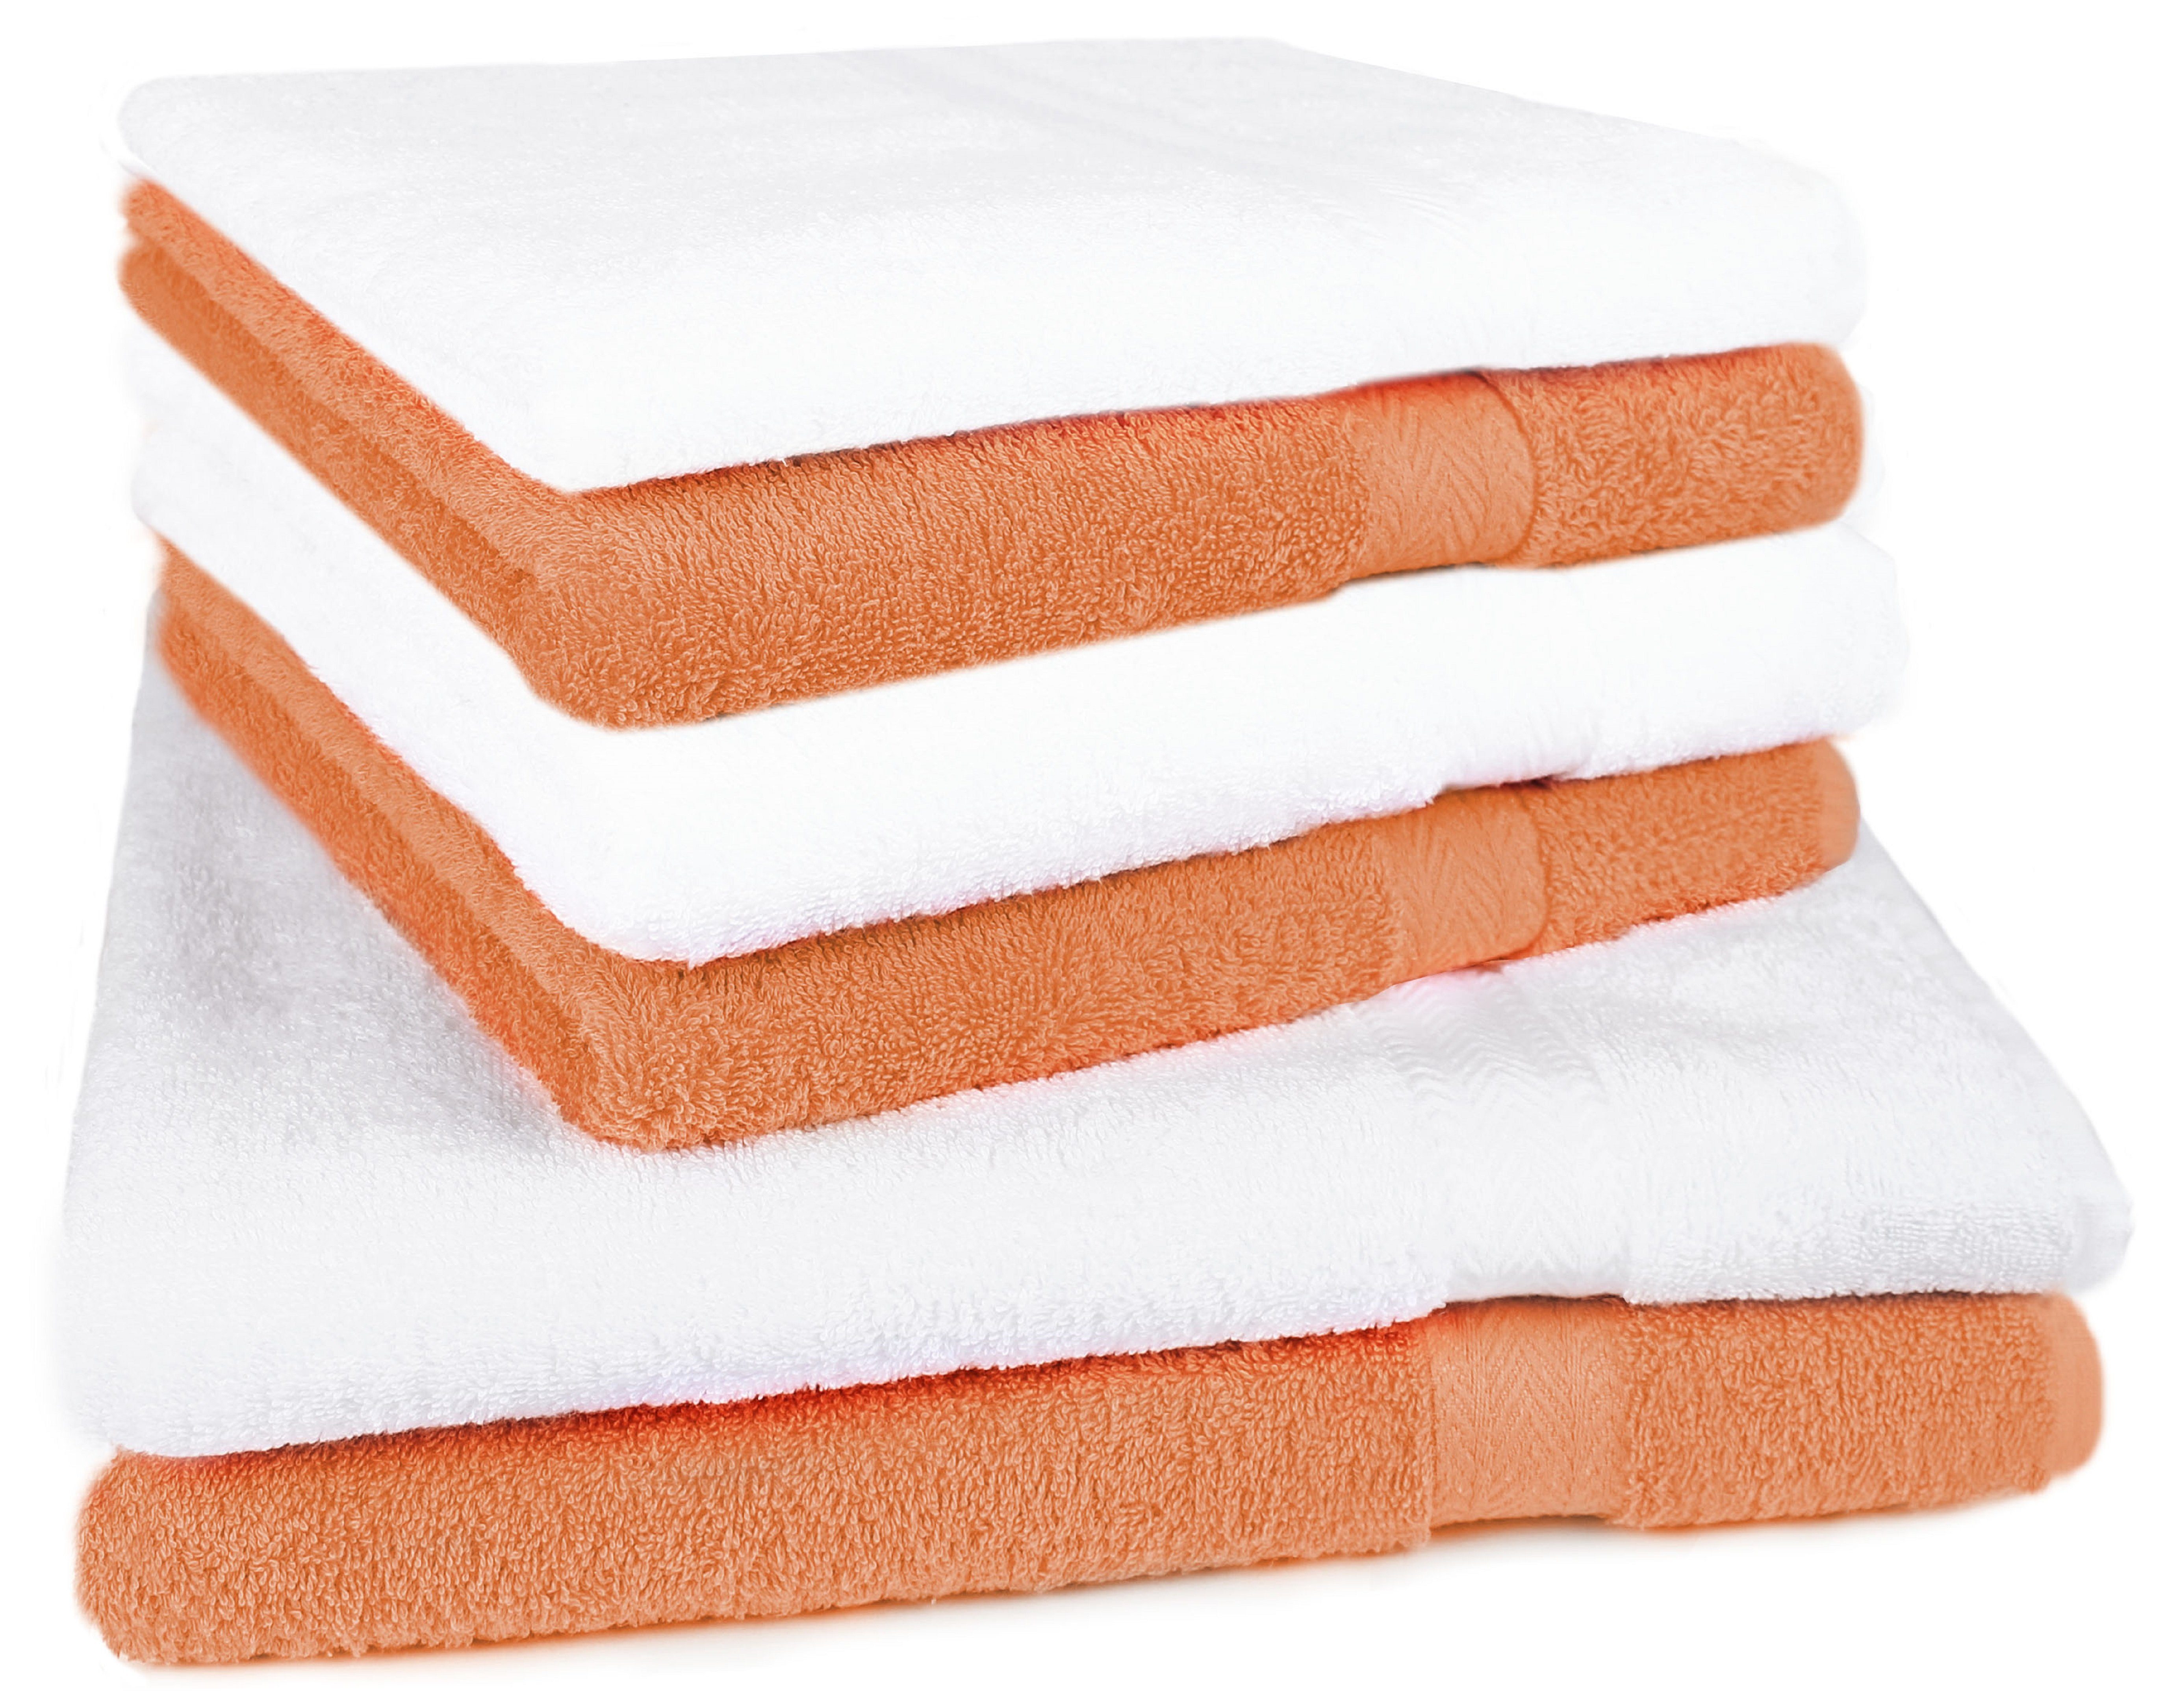 Betz Handtuch Set 6-TLG. Handtuch-Set Premium 100% Baumwolle 2 Duschtücher 4 Handtücher Farbe weiß und orange, 100% Baumwolle